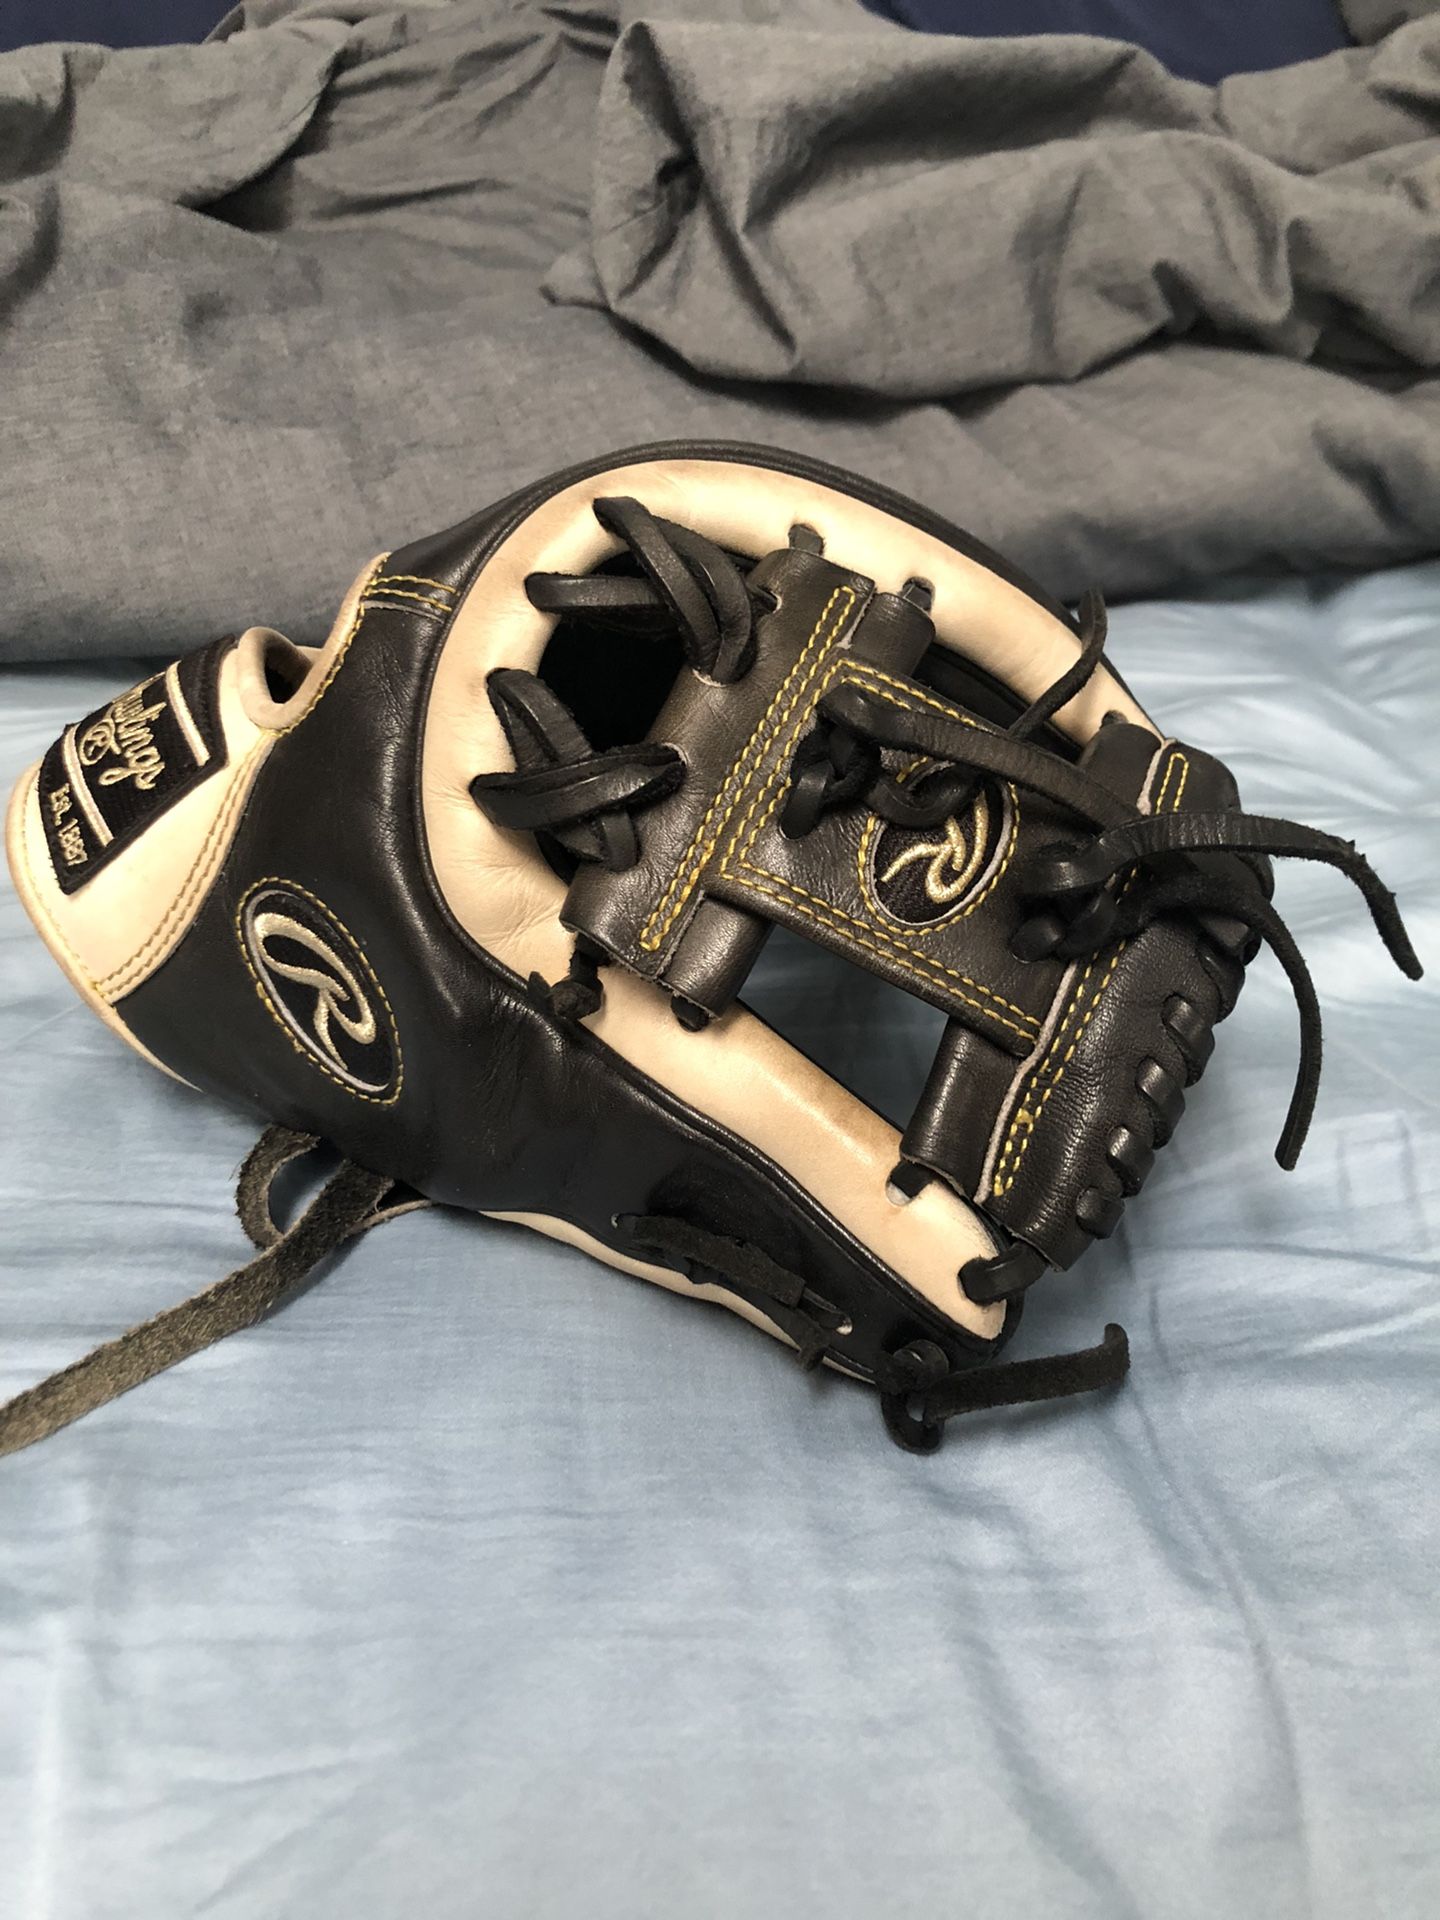 Rawlings Baseball Glove (Heart Of The Hide)